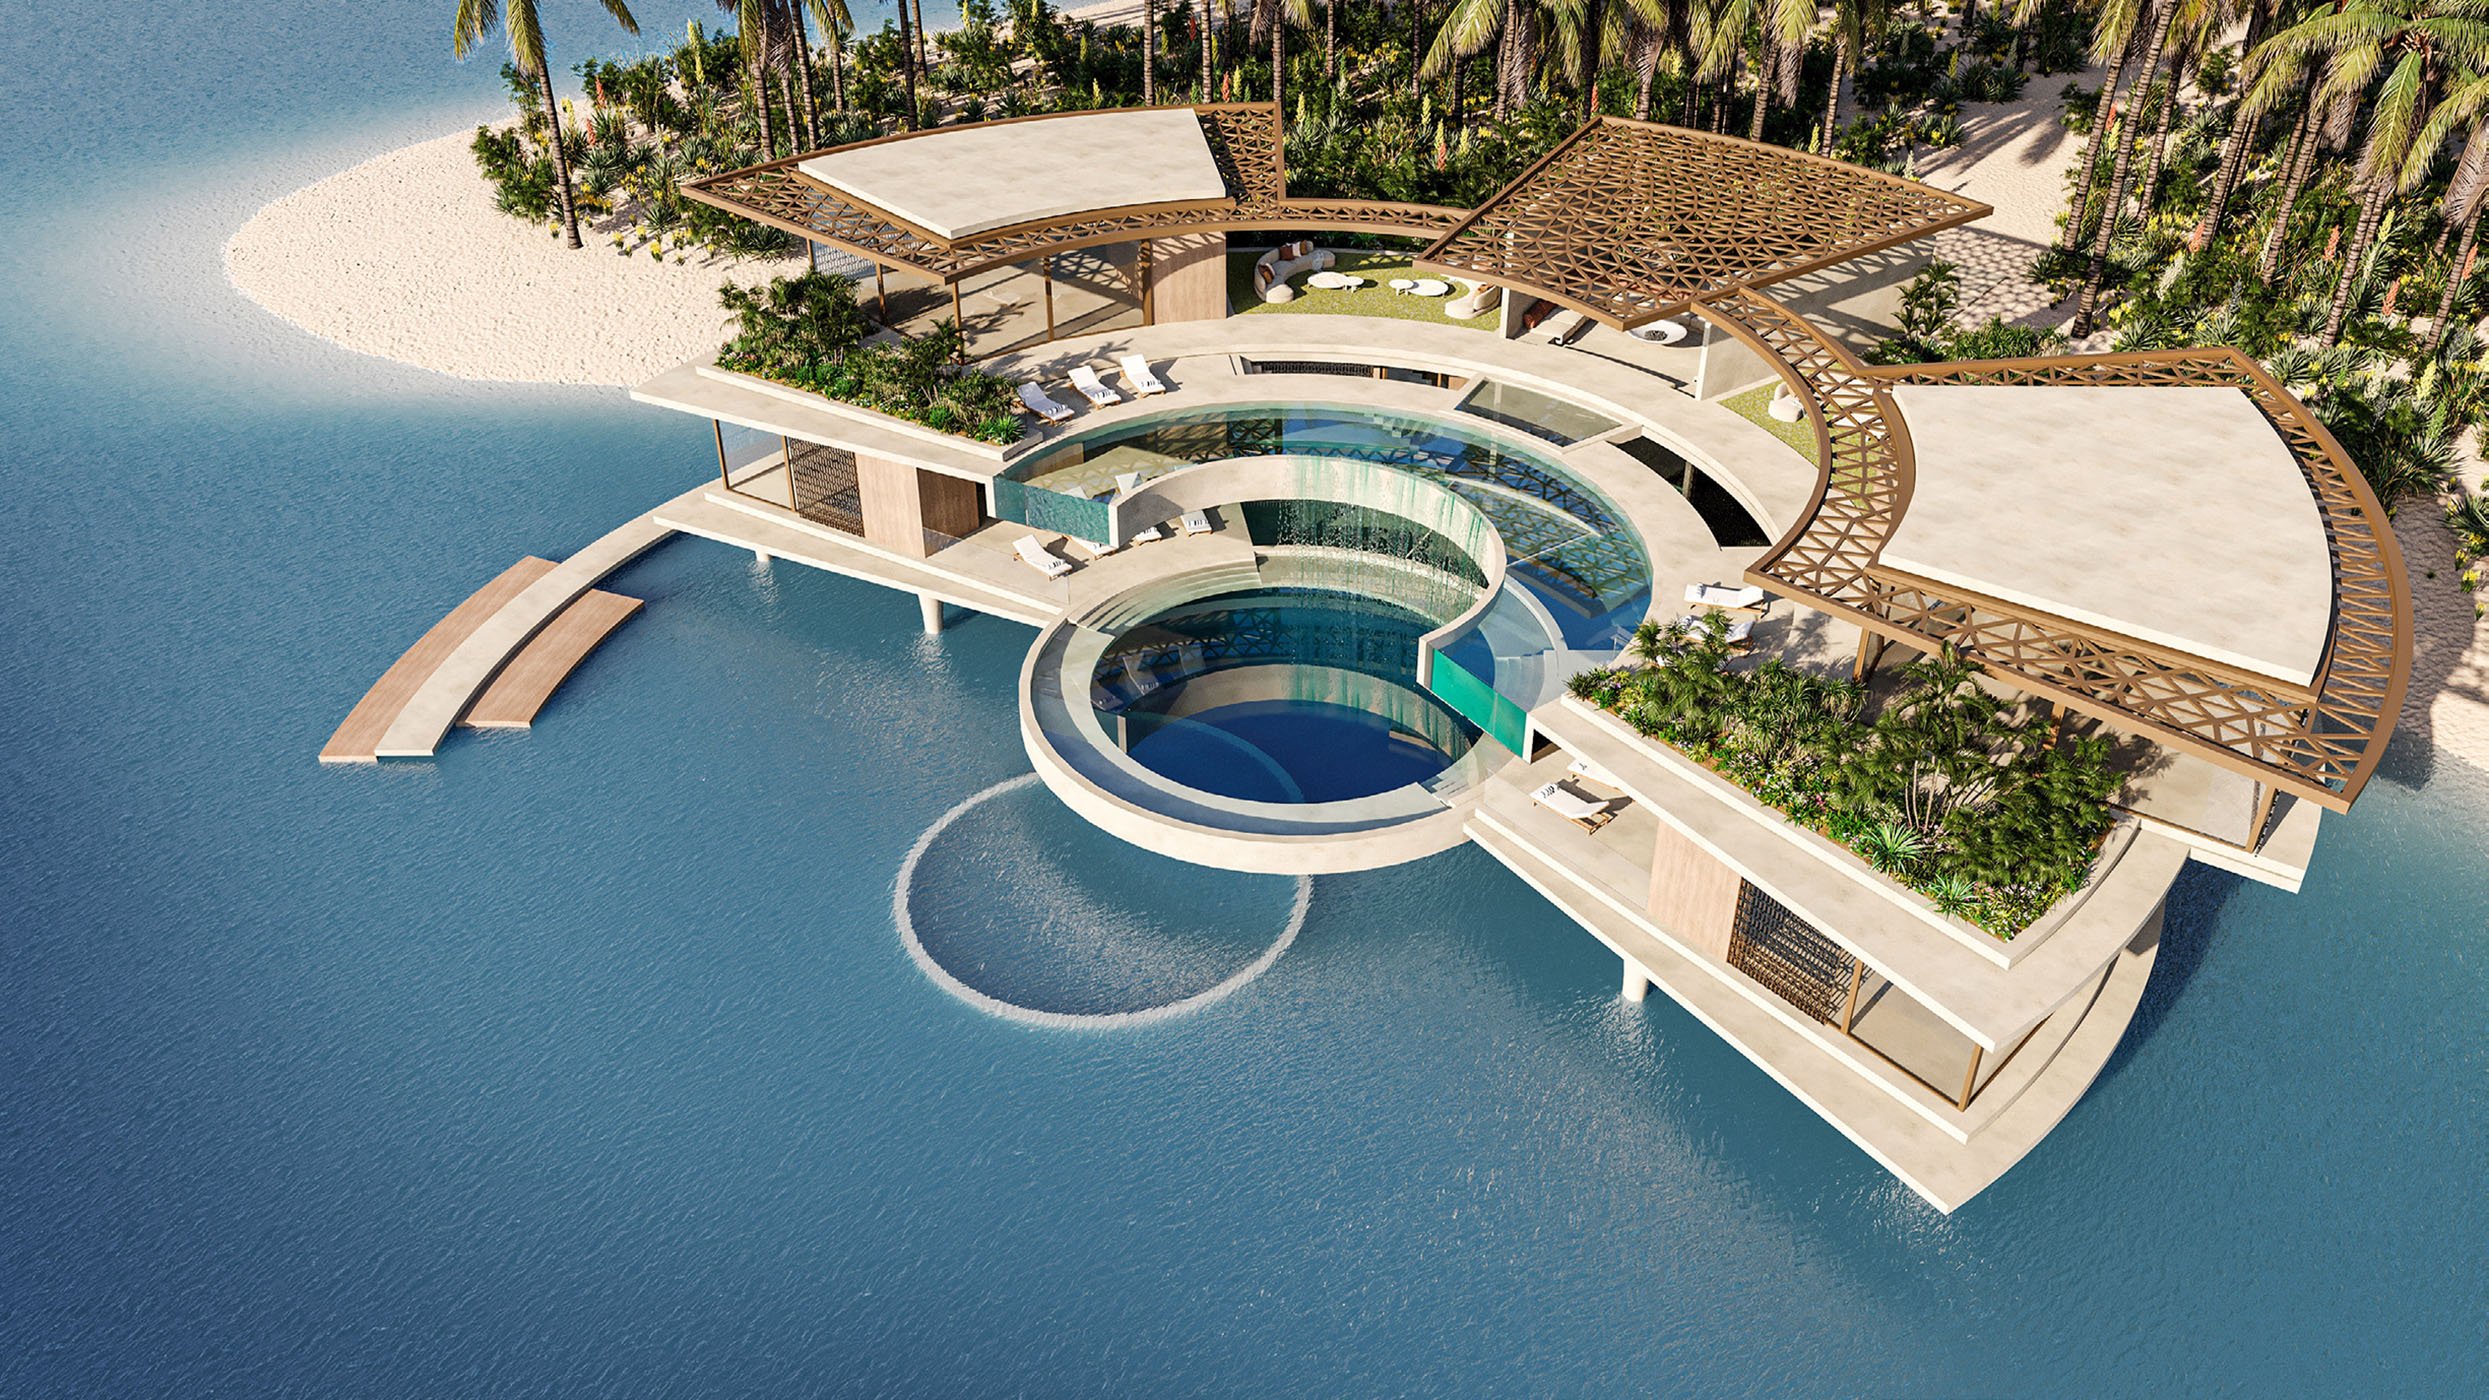 Amali Island by Amali 5-7BR Ultra Luxury Beach Villas.